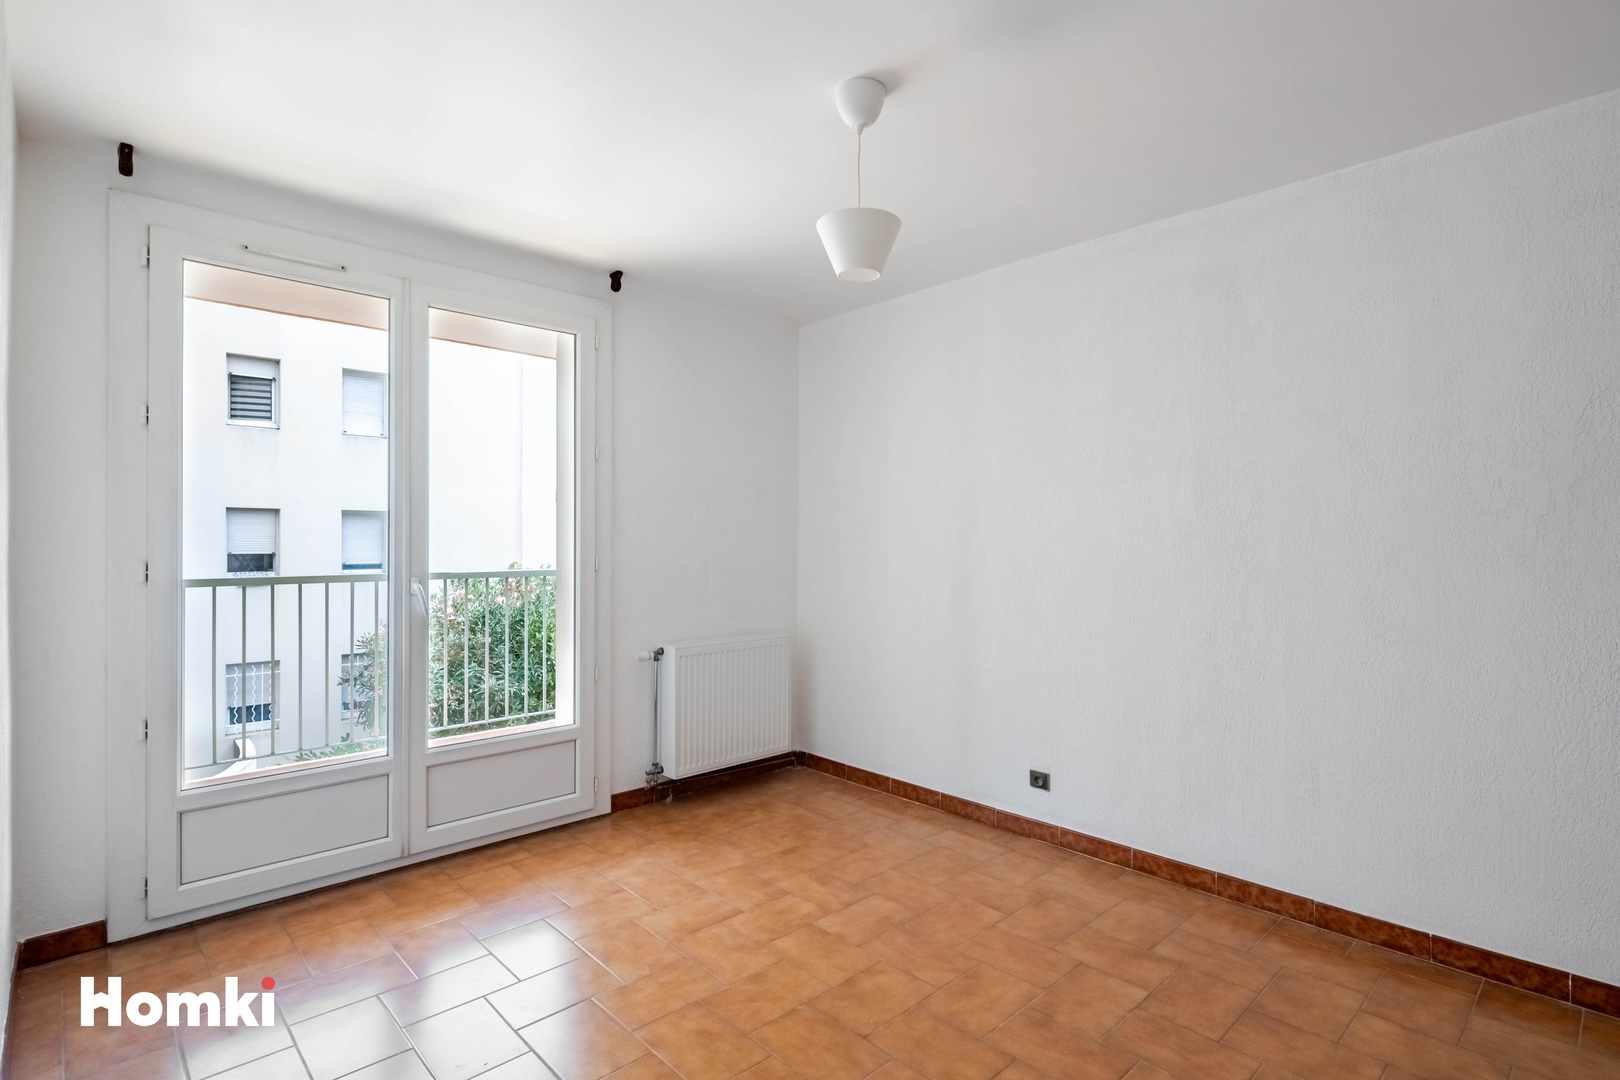 Homki - Vente Appartement  de 64.0 m² à Nîmes 30900